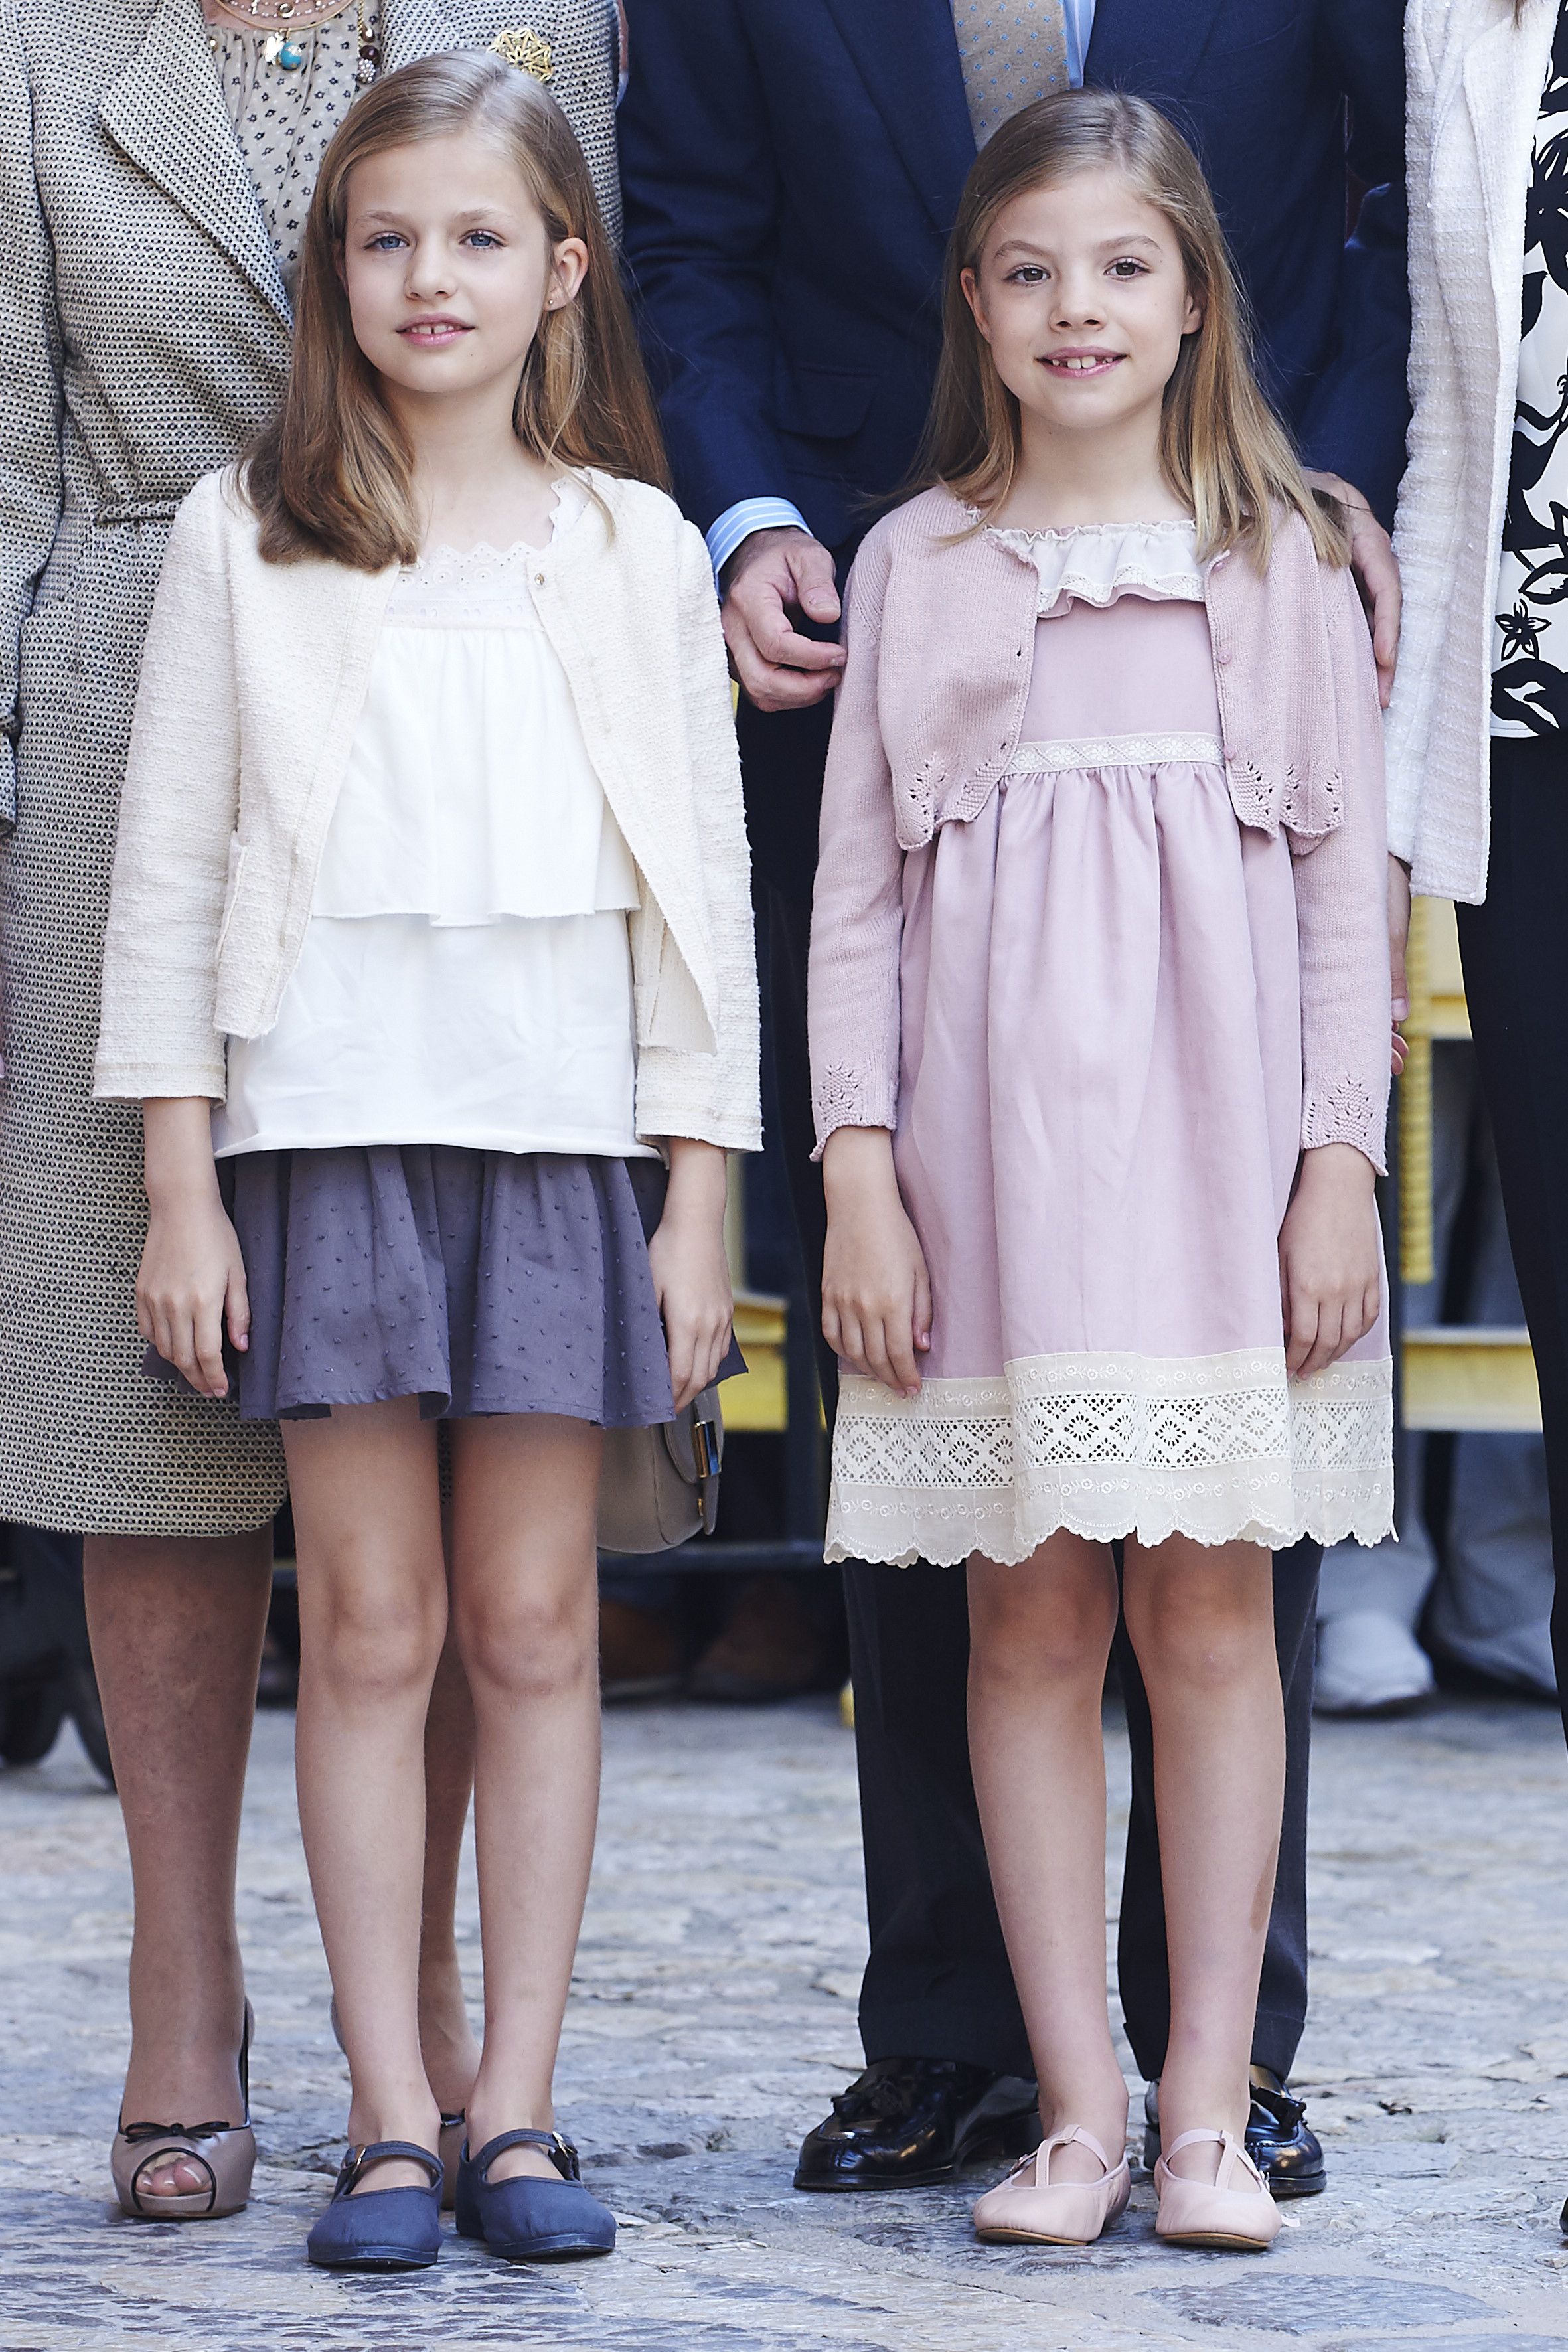 スペイン王室の美人姉妹 レオノール王女 ソフィア王女に注目